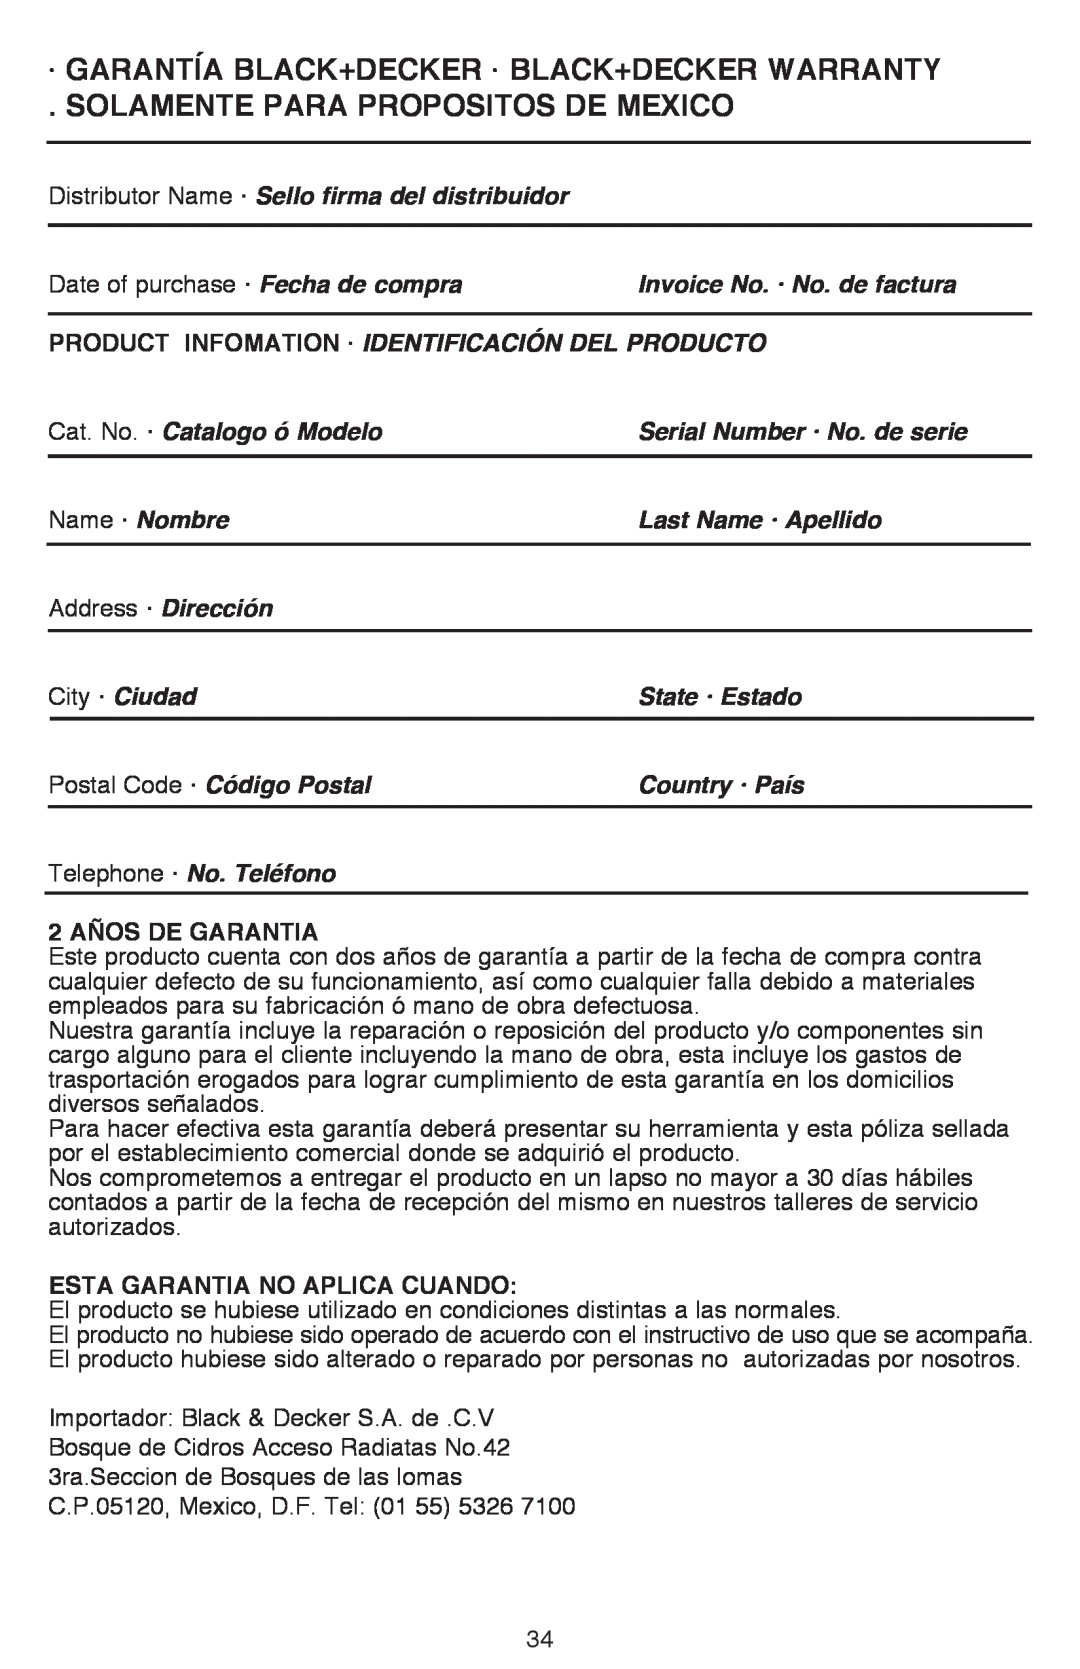 Black & Decker DR260BR ·Garantía Black+Decker · Black+Decker Warranty, Solamente Para Propositos De Mexico 